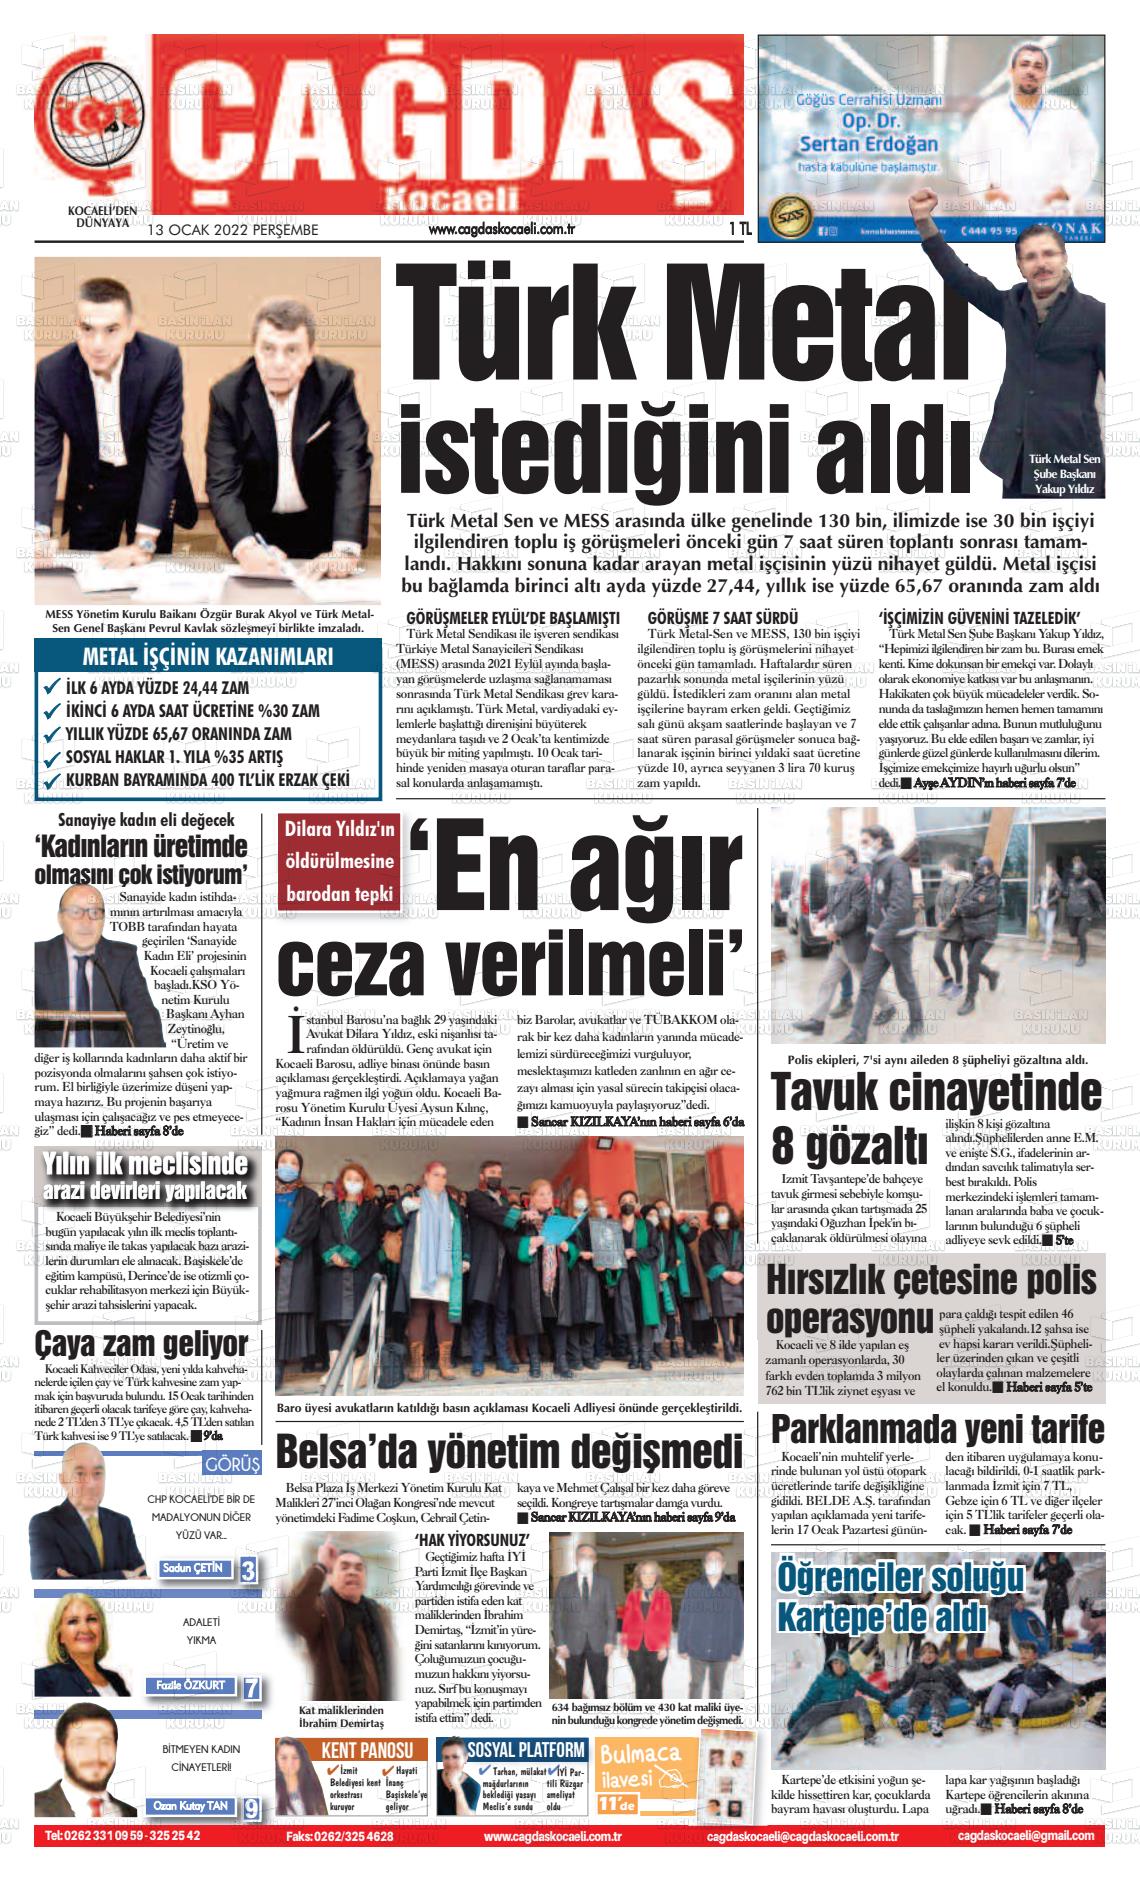 13 Ocak 2022 Çağdaş Kocaeli Gazete Manşeti